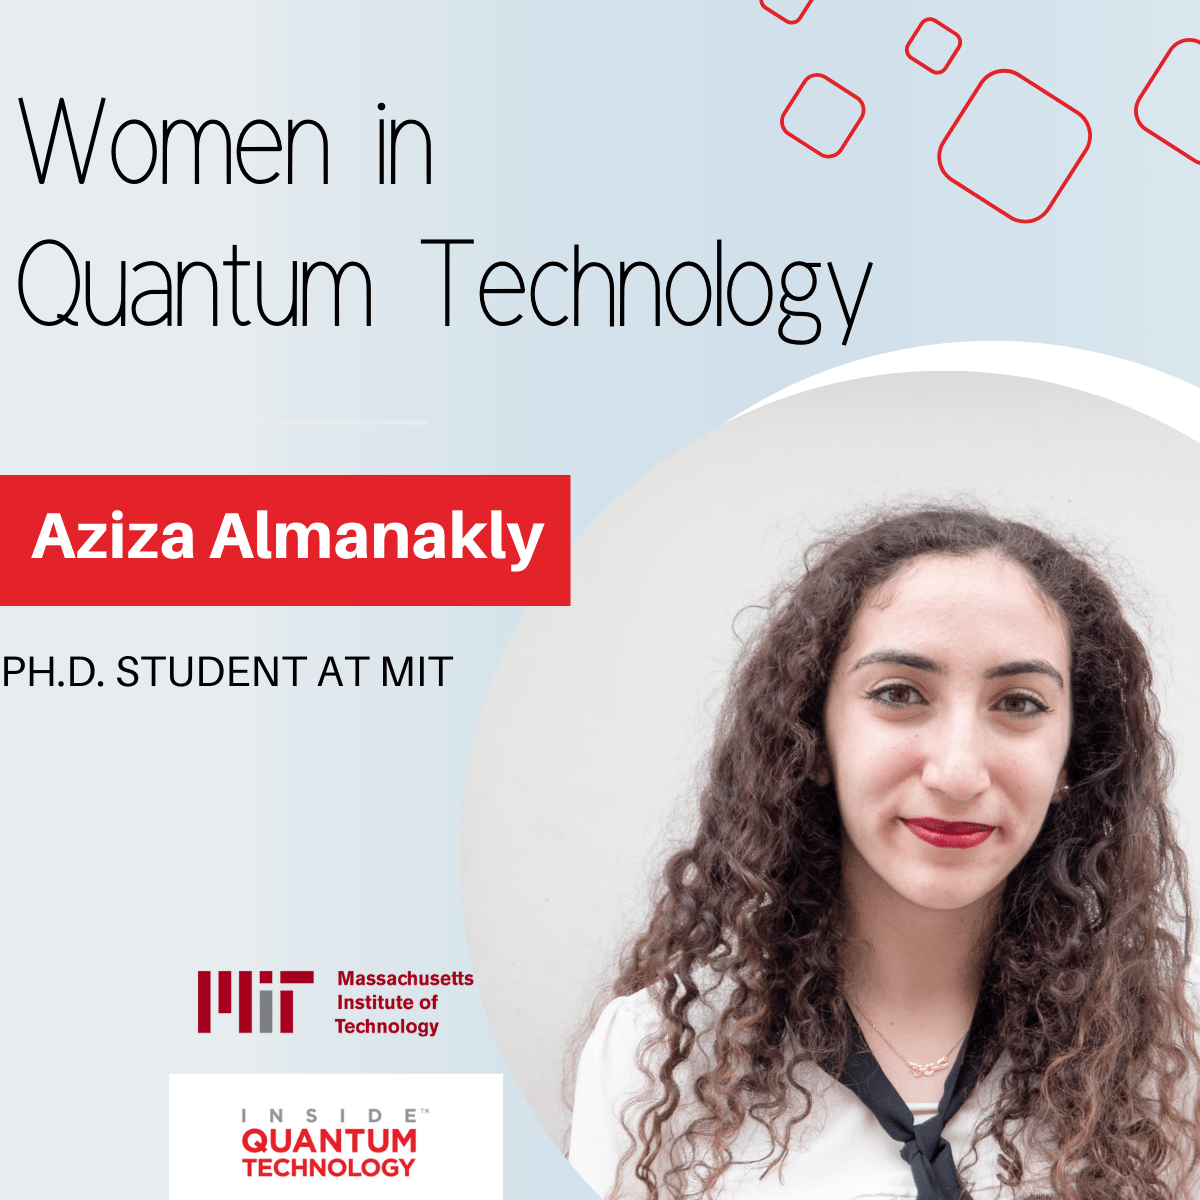 MIT'de yüksek lisans öğrencisi olan Aziza Almanakly, kuantum hesaplama ve fotonik alanındaki eğitimini ve araştırmalarını anlatıyor.